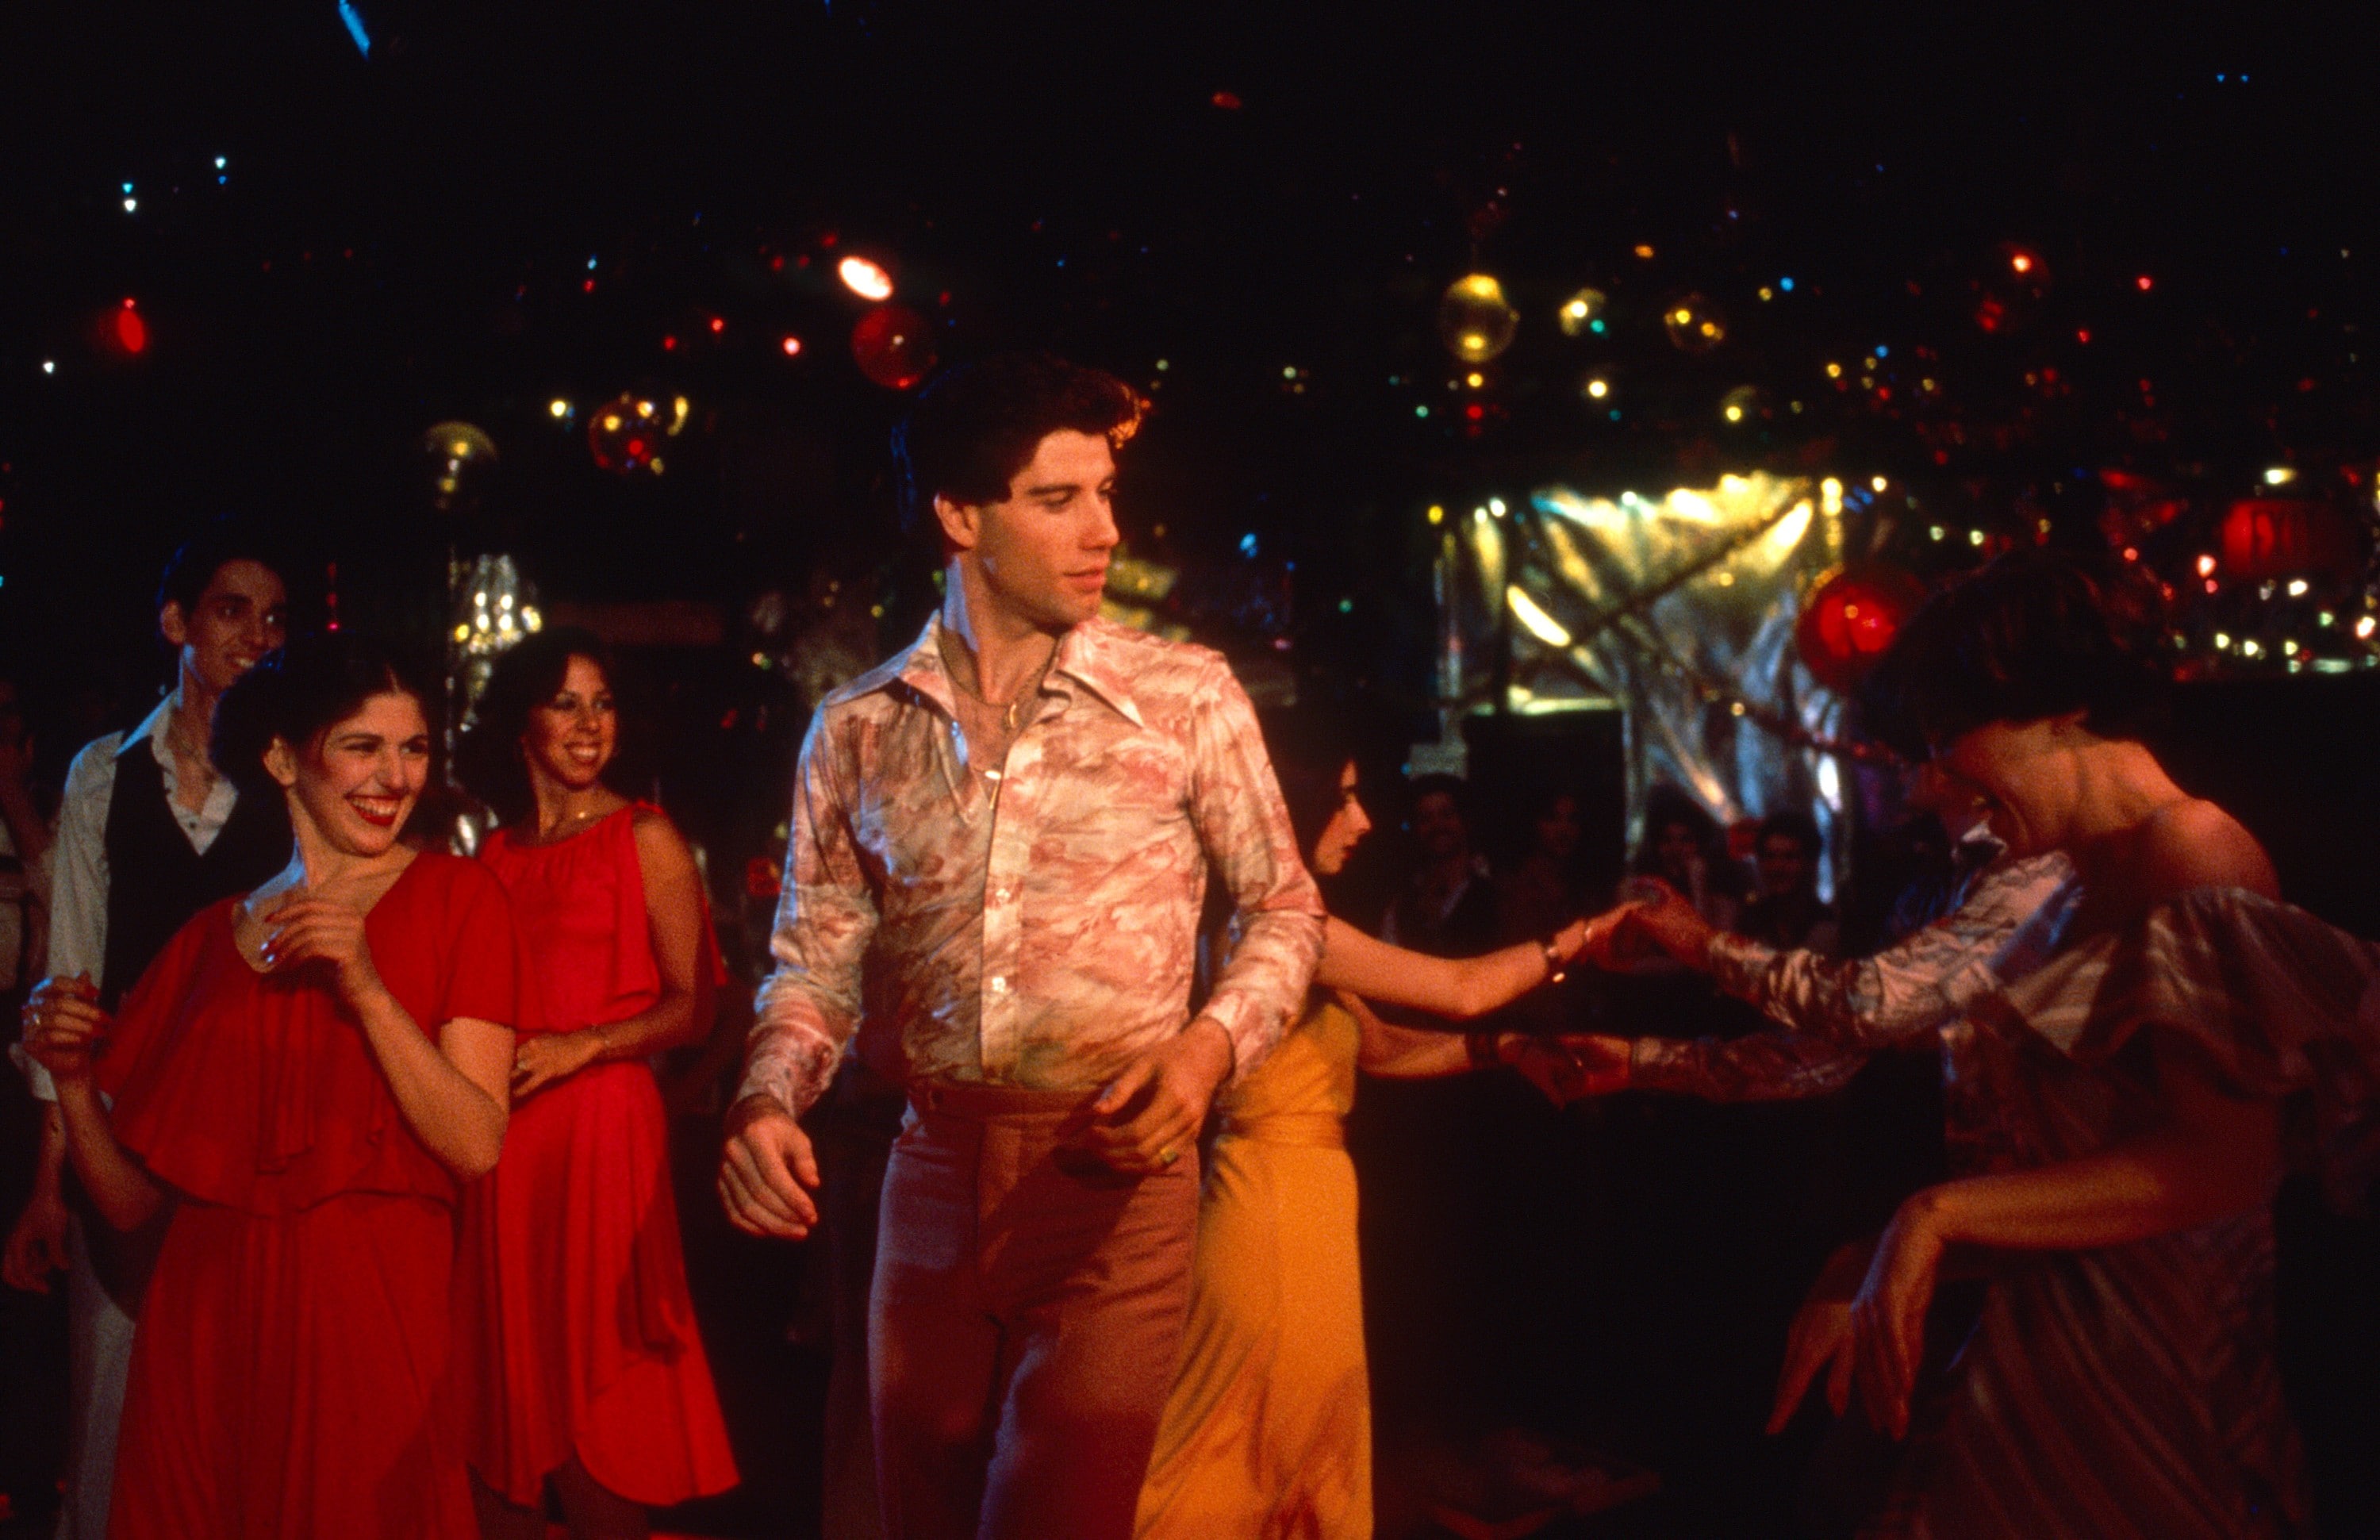 L'ingresso in discoteca di Tony Manero sulle note della Quinta di Beethoven versione disco-dance. La febbre del sabato sera, 1977